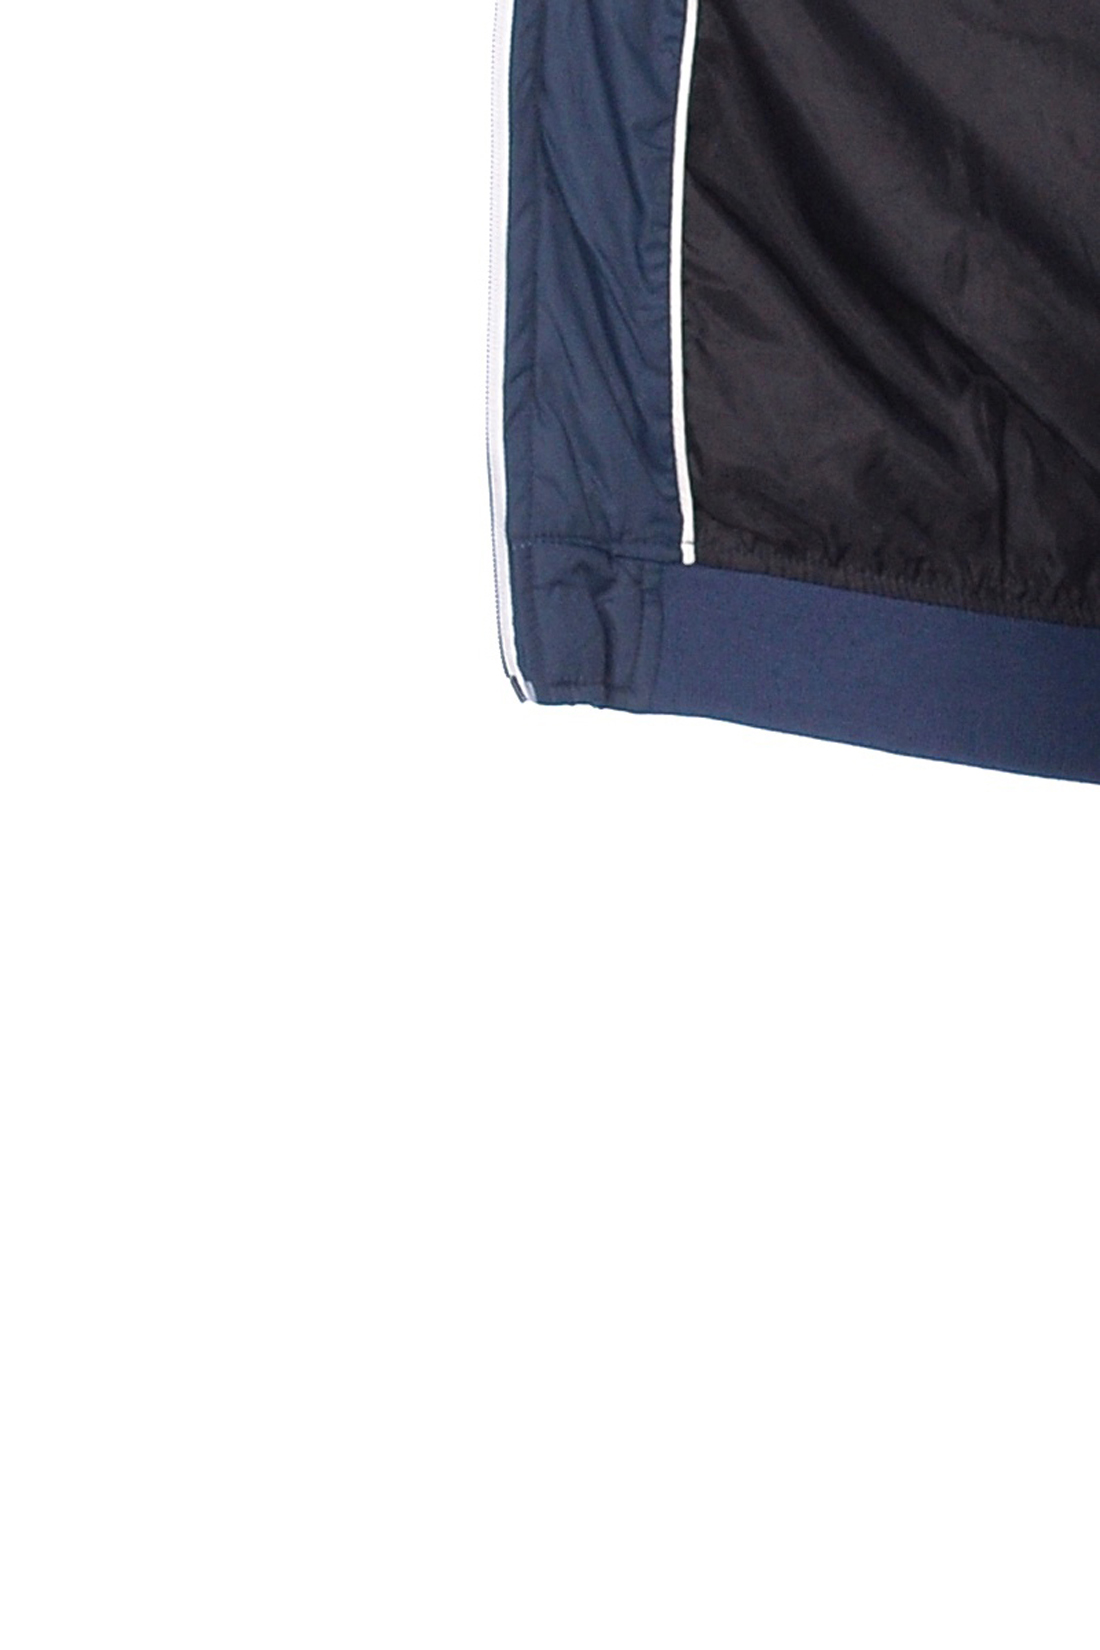 Стёганая куртка с резинками-рибана (арт. baon B538559), размер S, цвет синий Стёганая куртка с резинками-рибана (арт. baon B538559) - фото 3